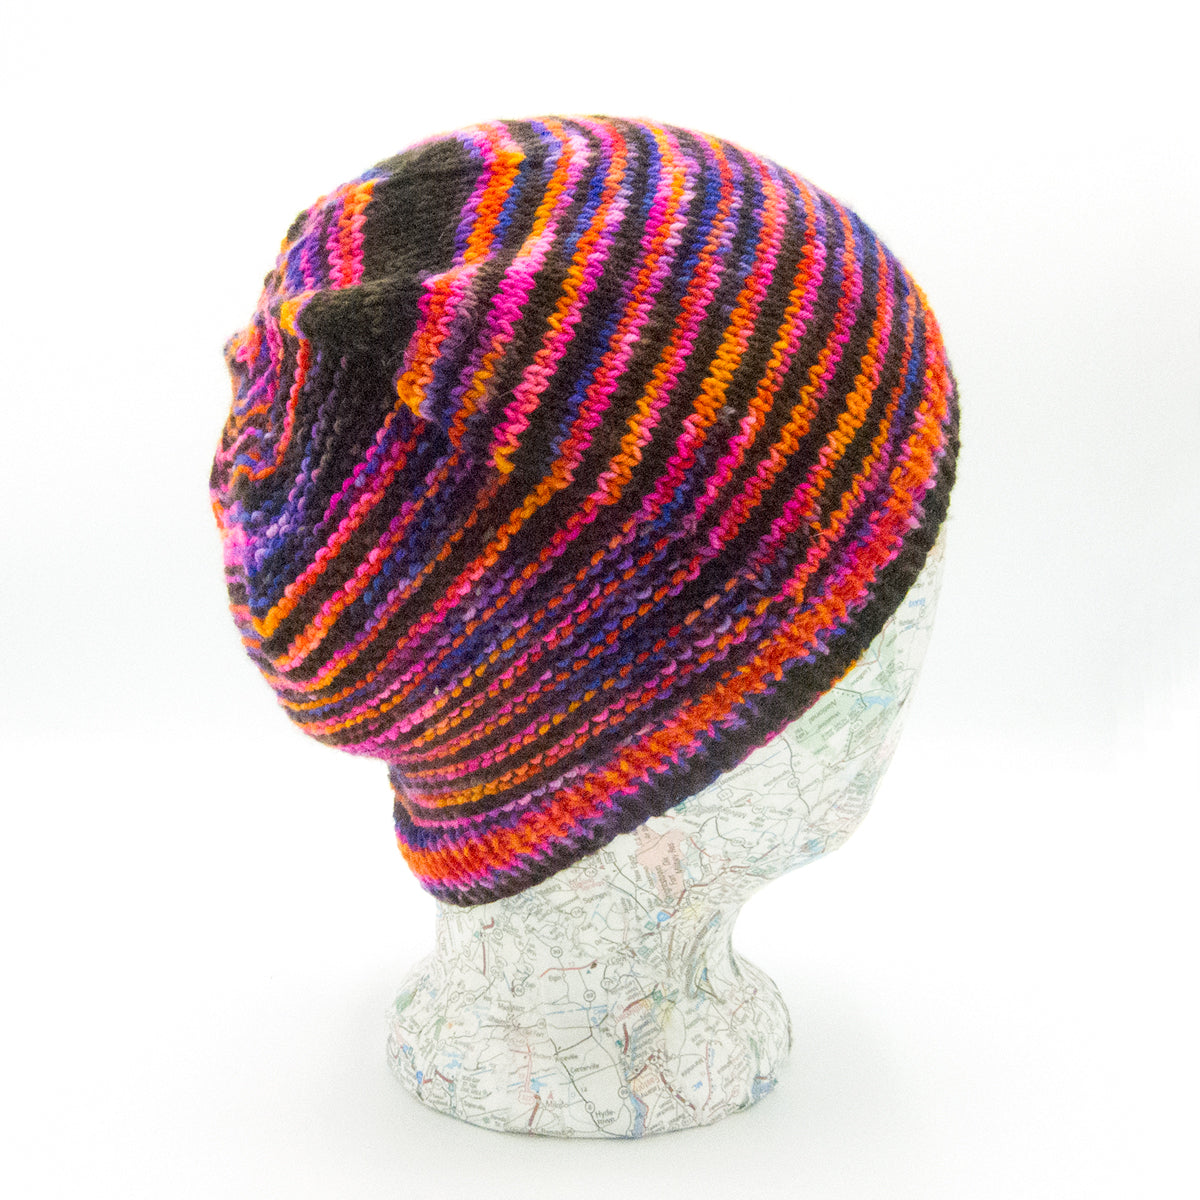 Knitting 201: Make a Hat